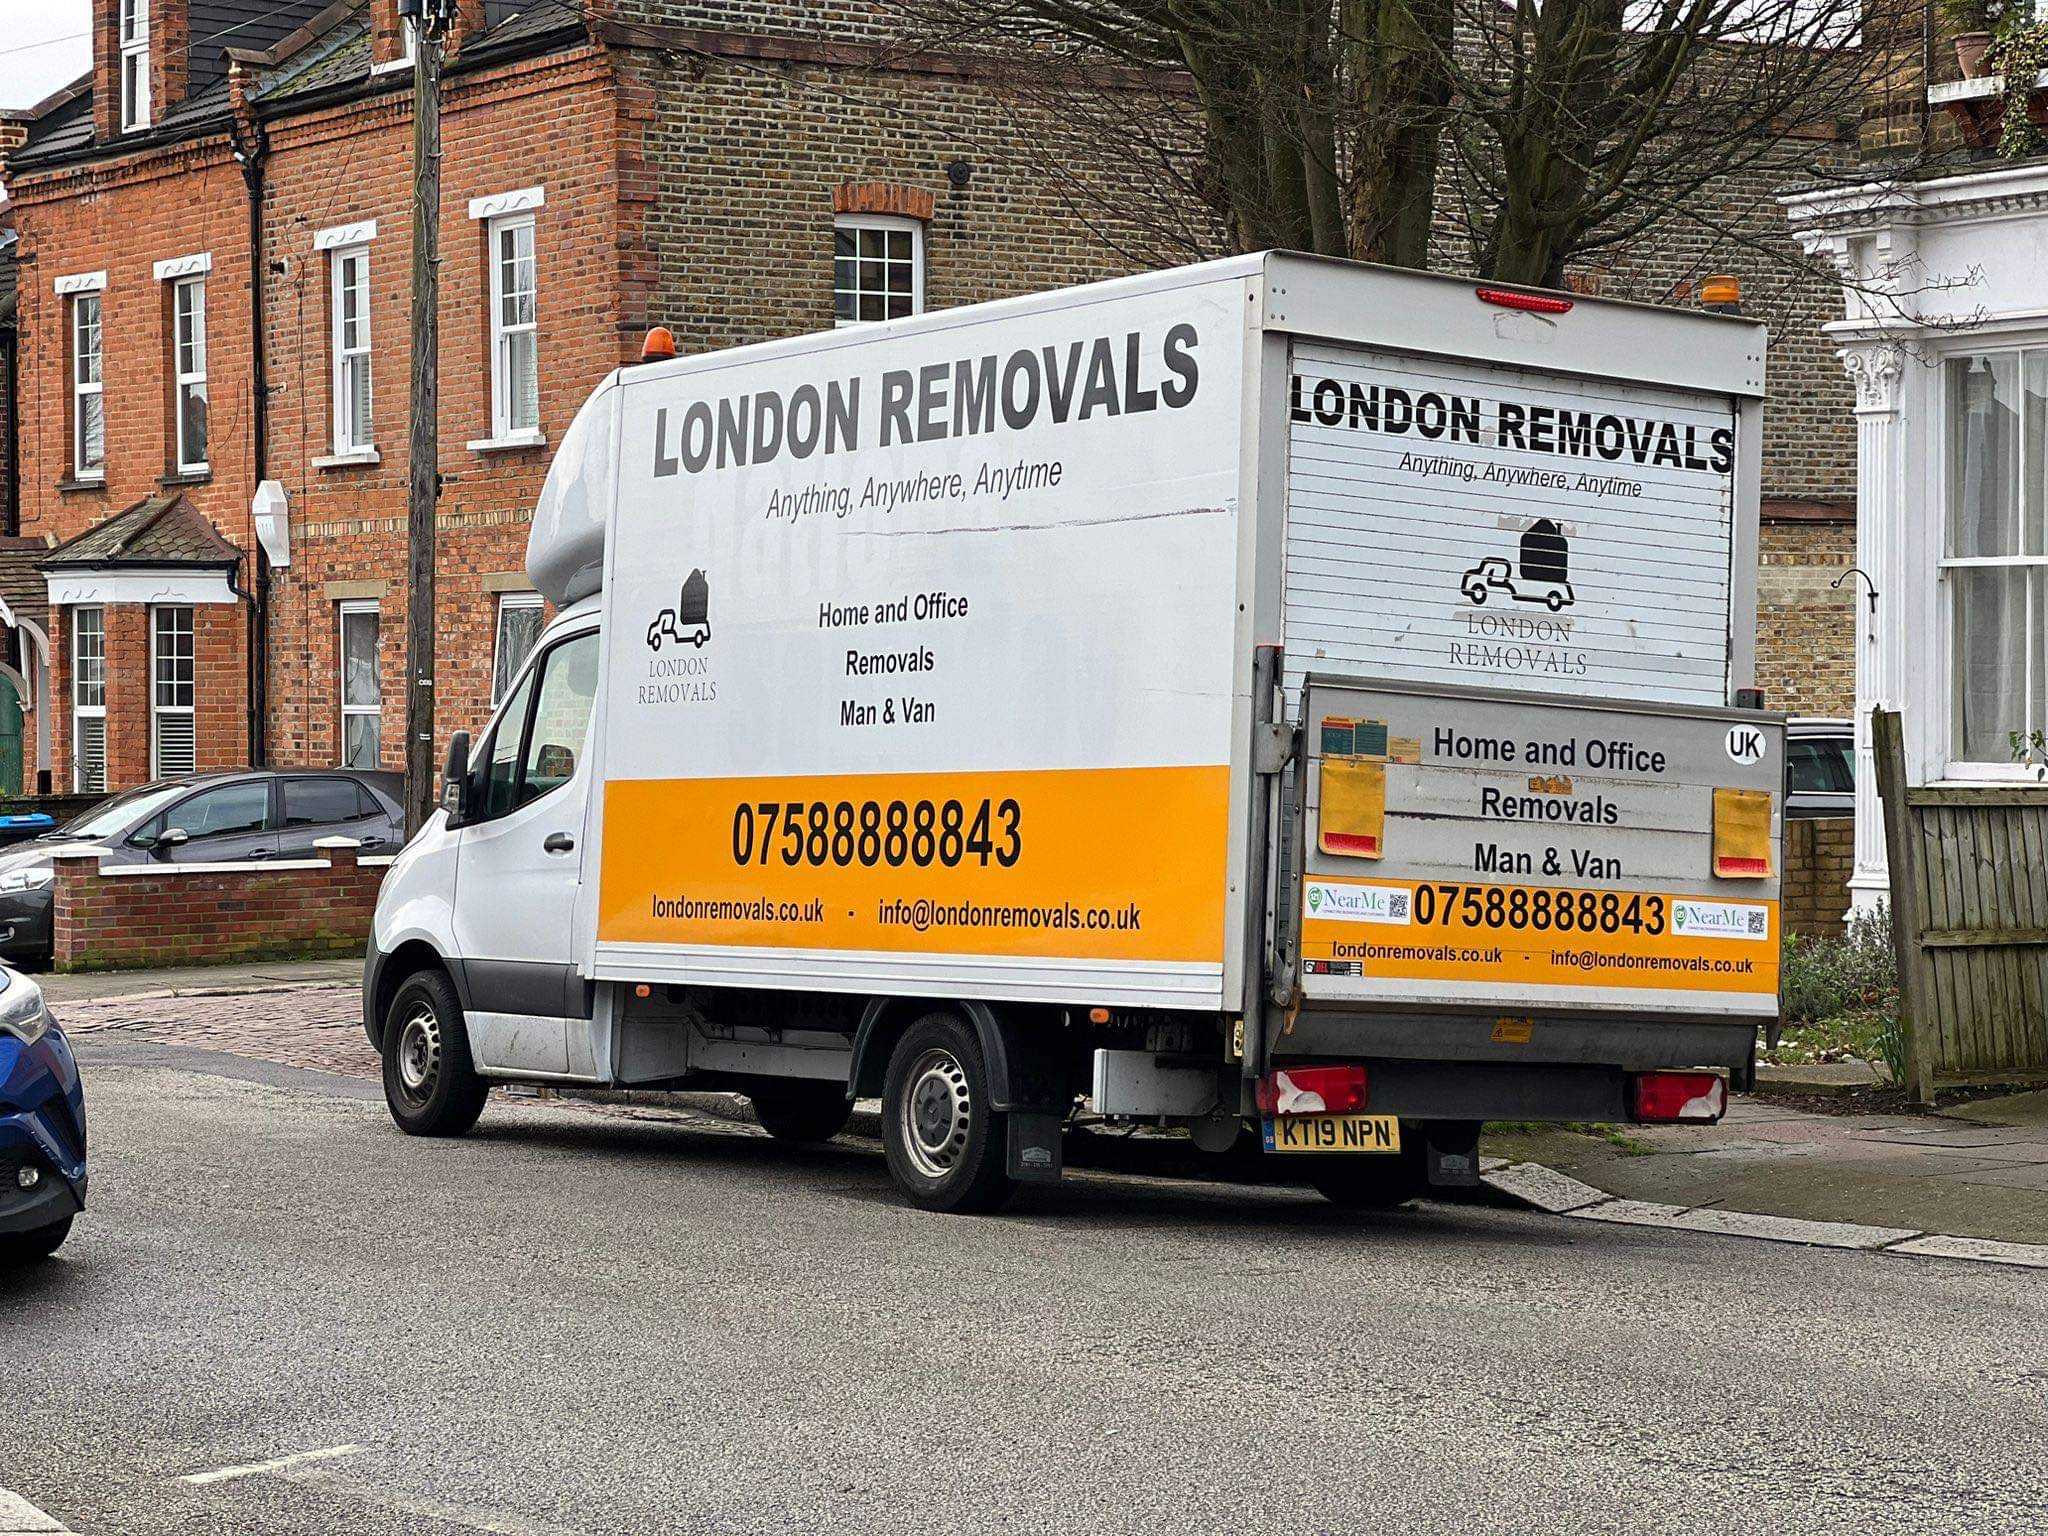 London Removals ltd